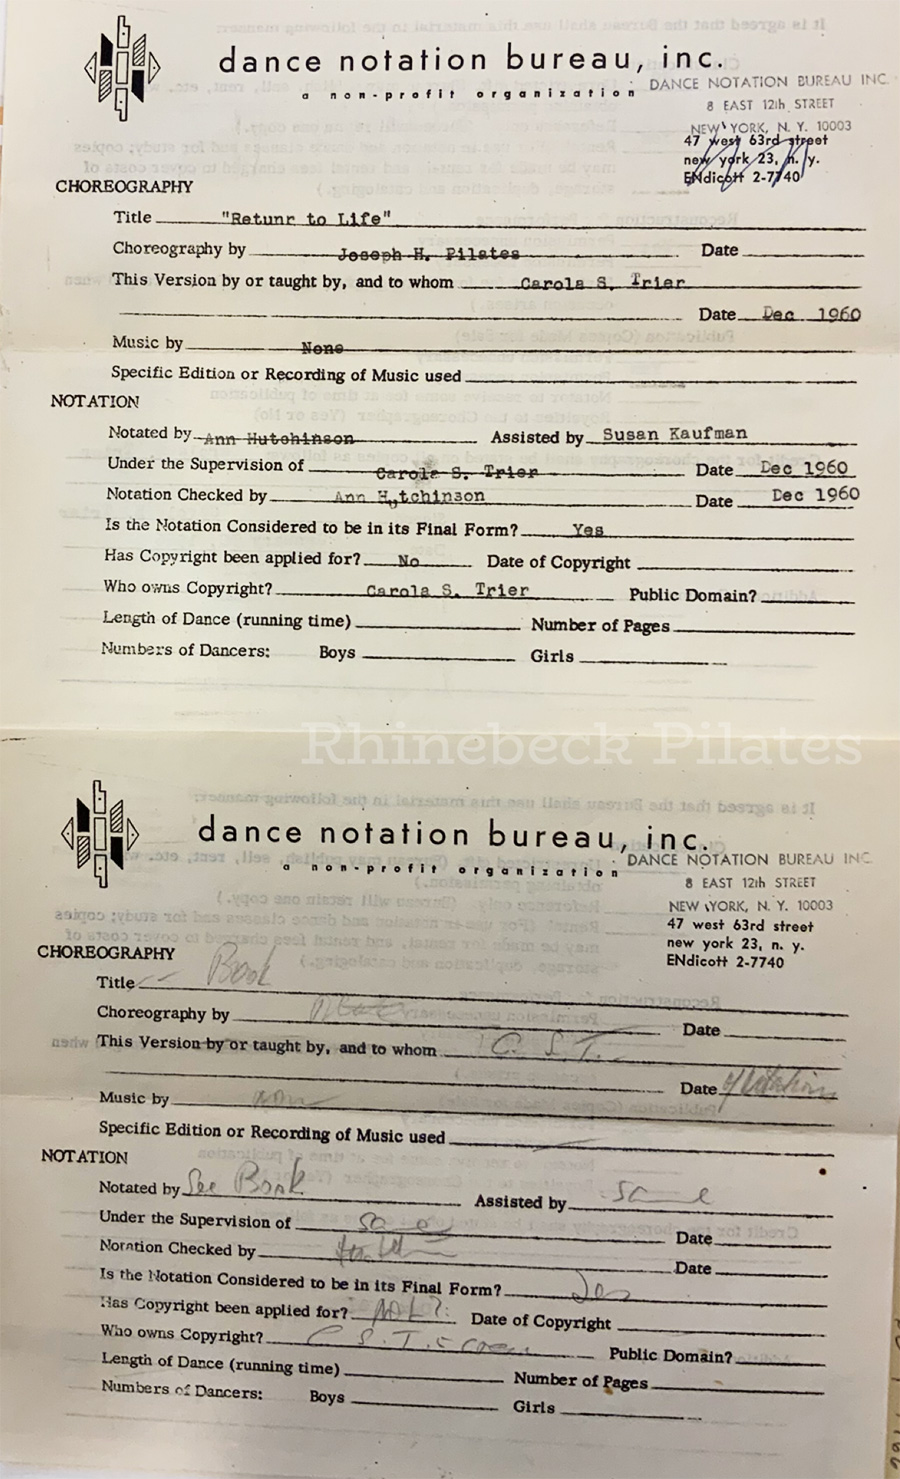 pilates-labanotation-Carola-Trier-Dance-Notation-Bureau-contract